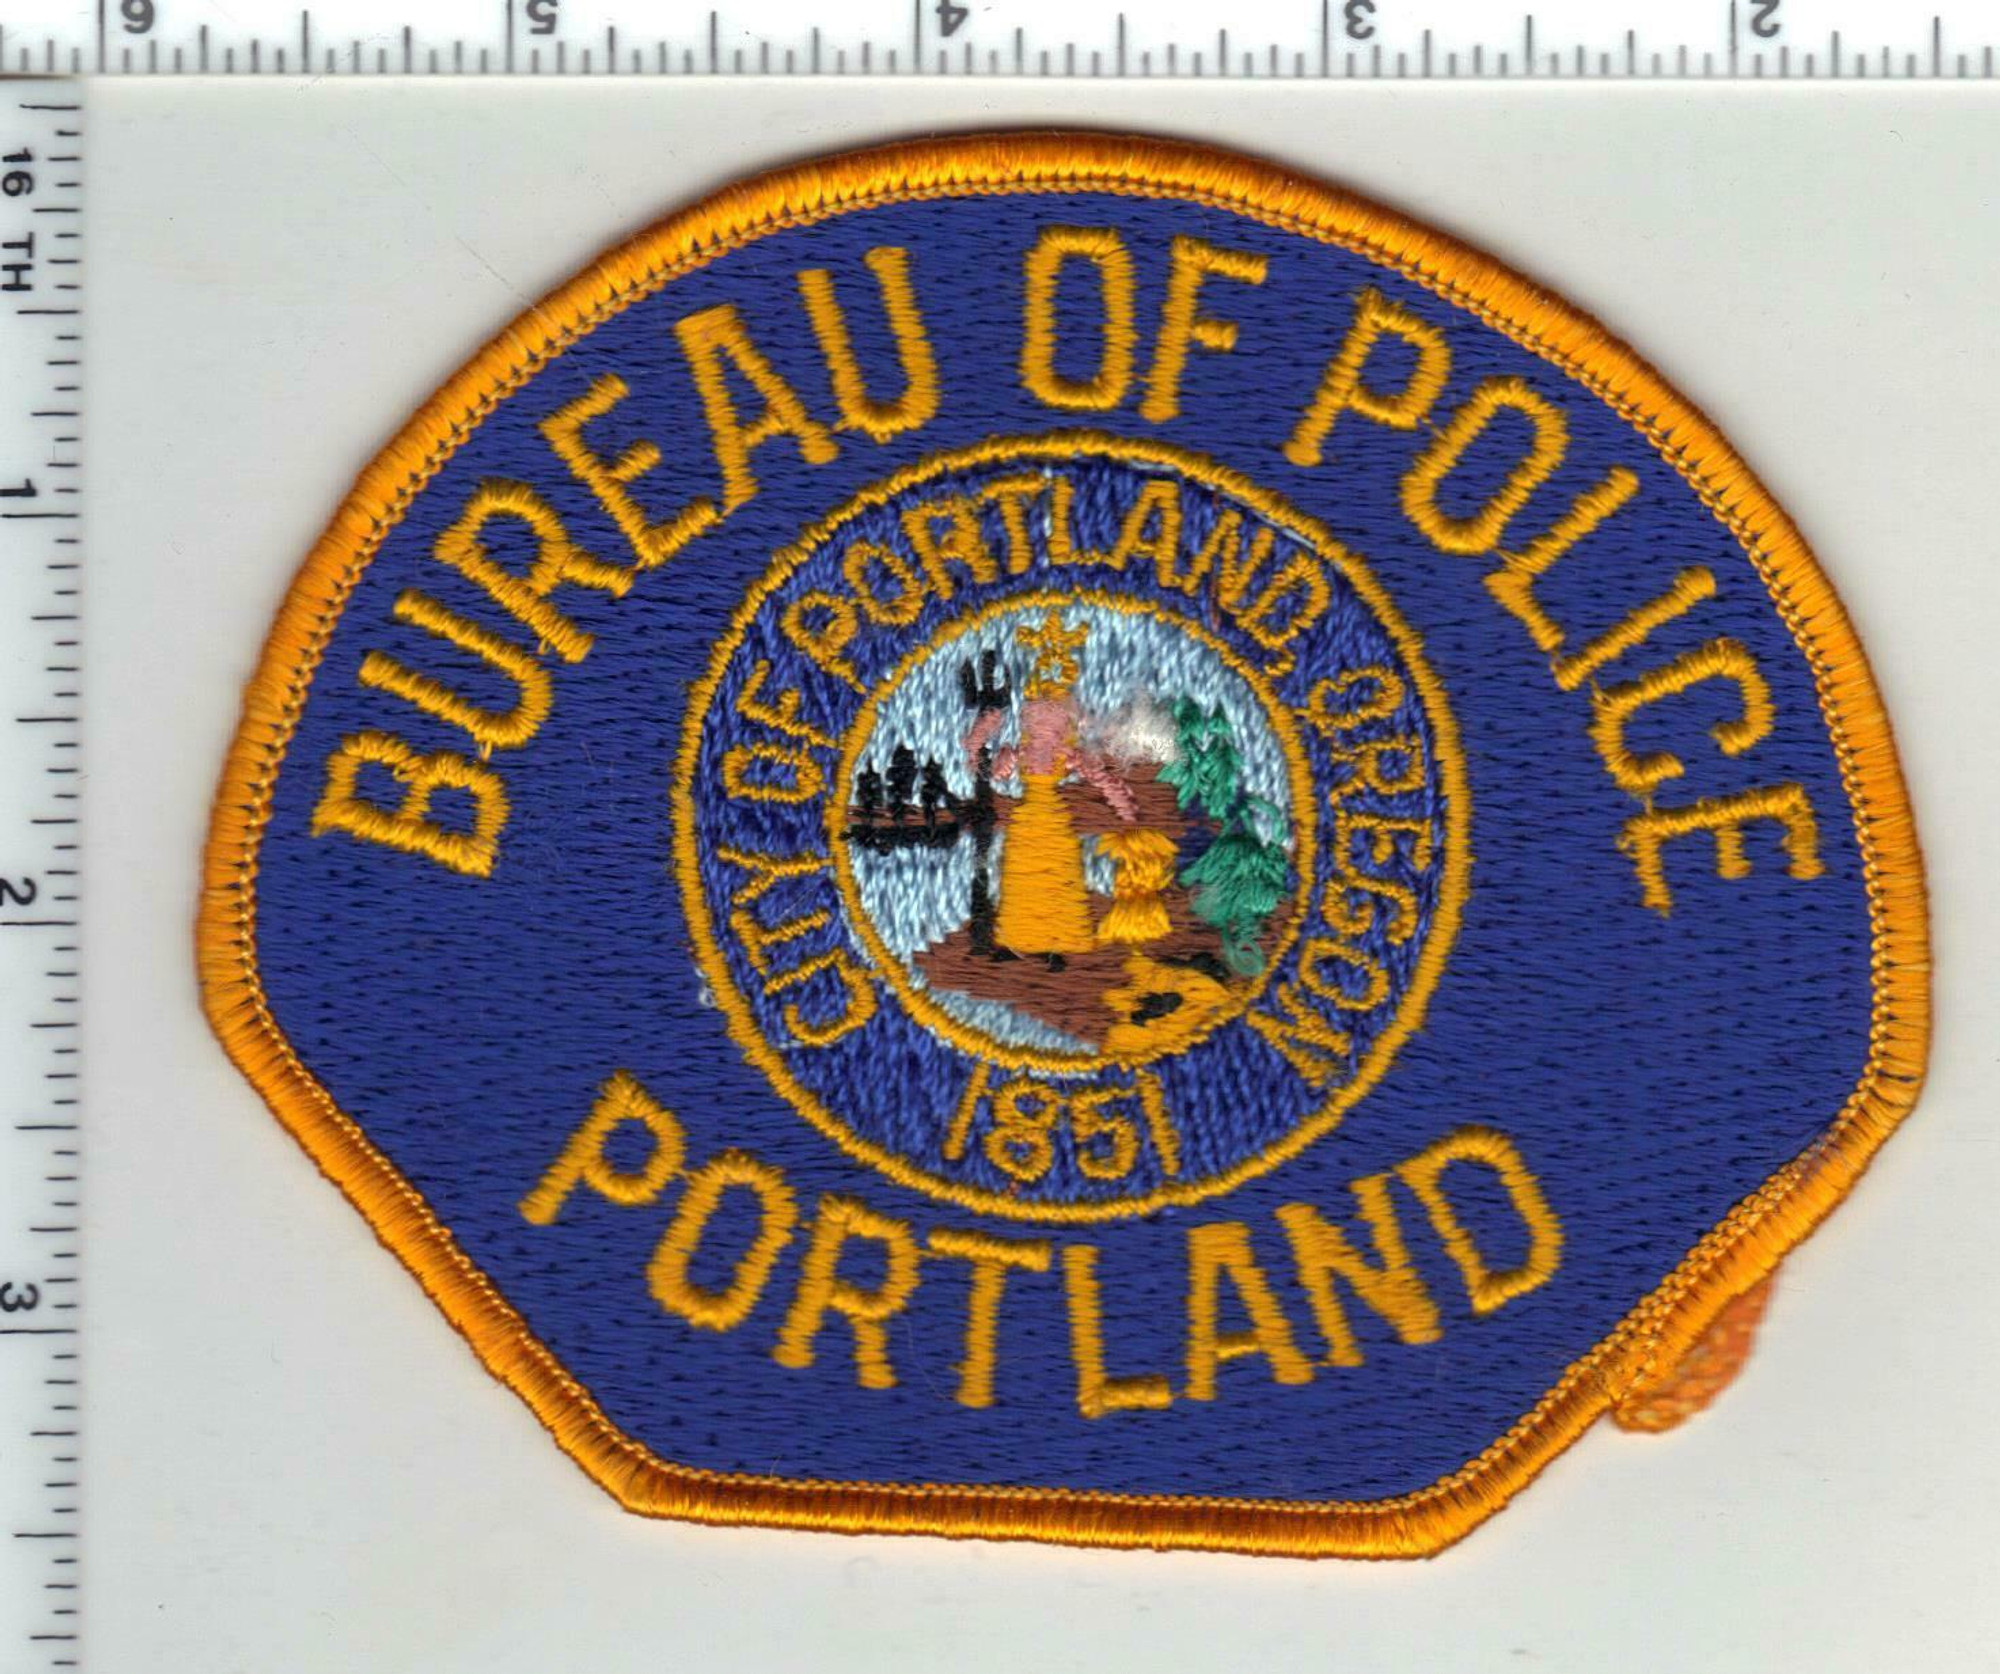 Bureau of Police Portland OR Police Patch